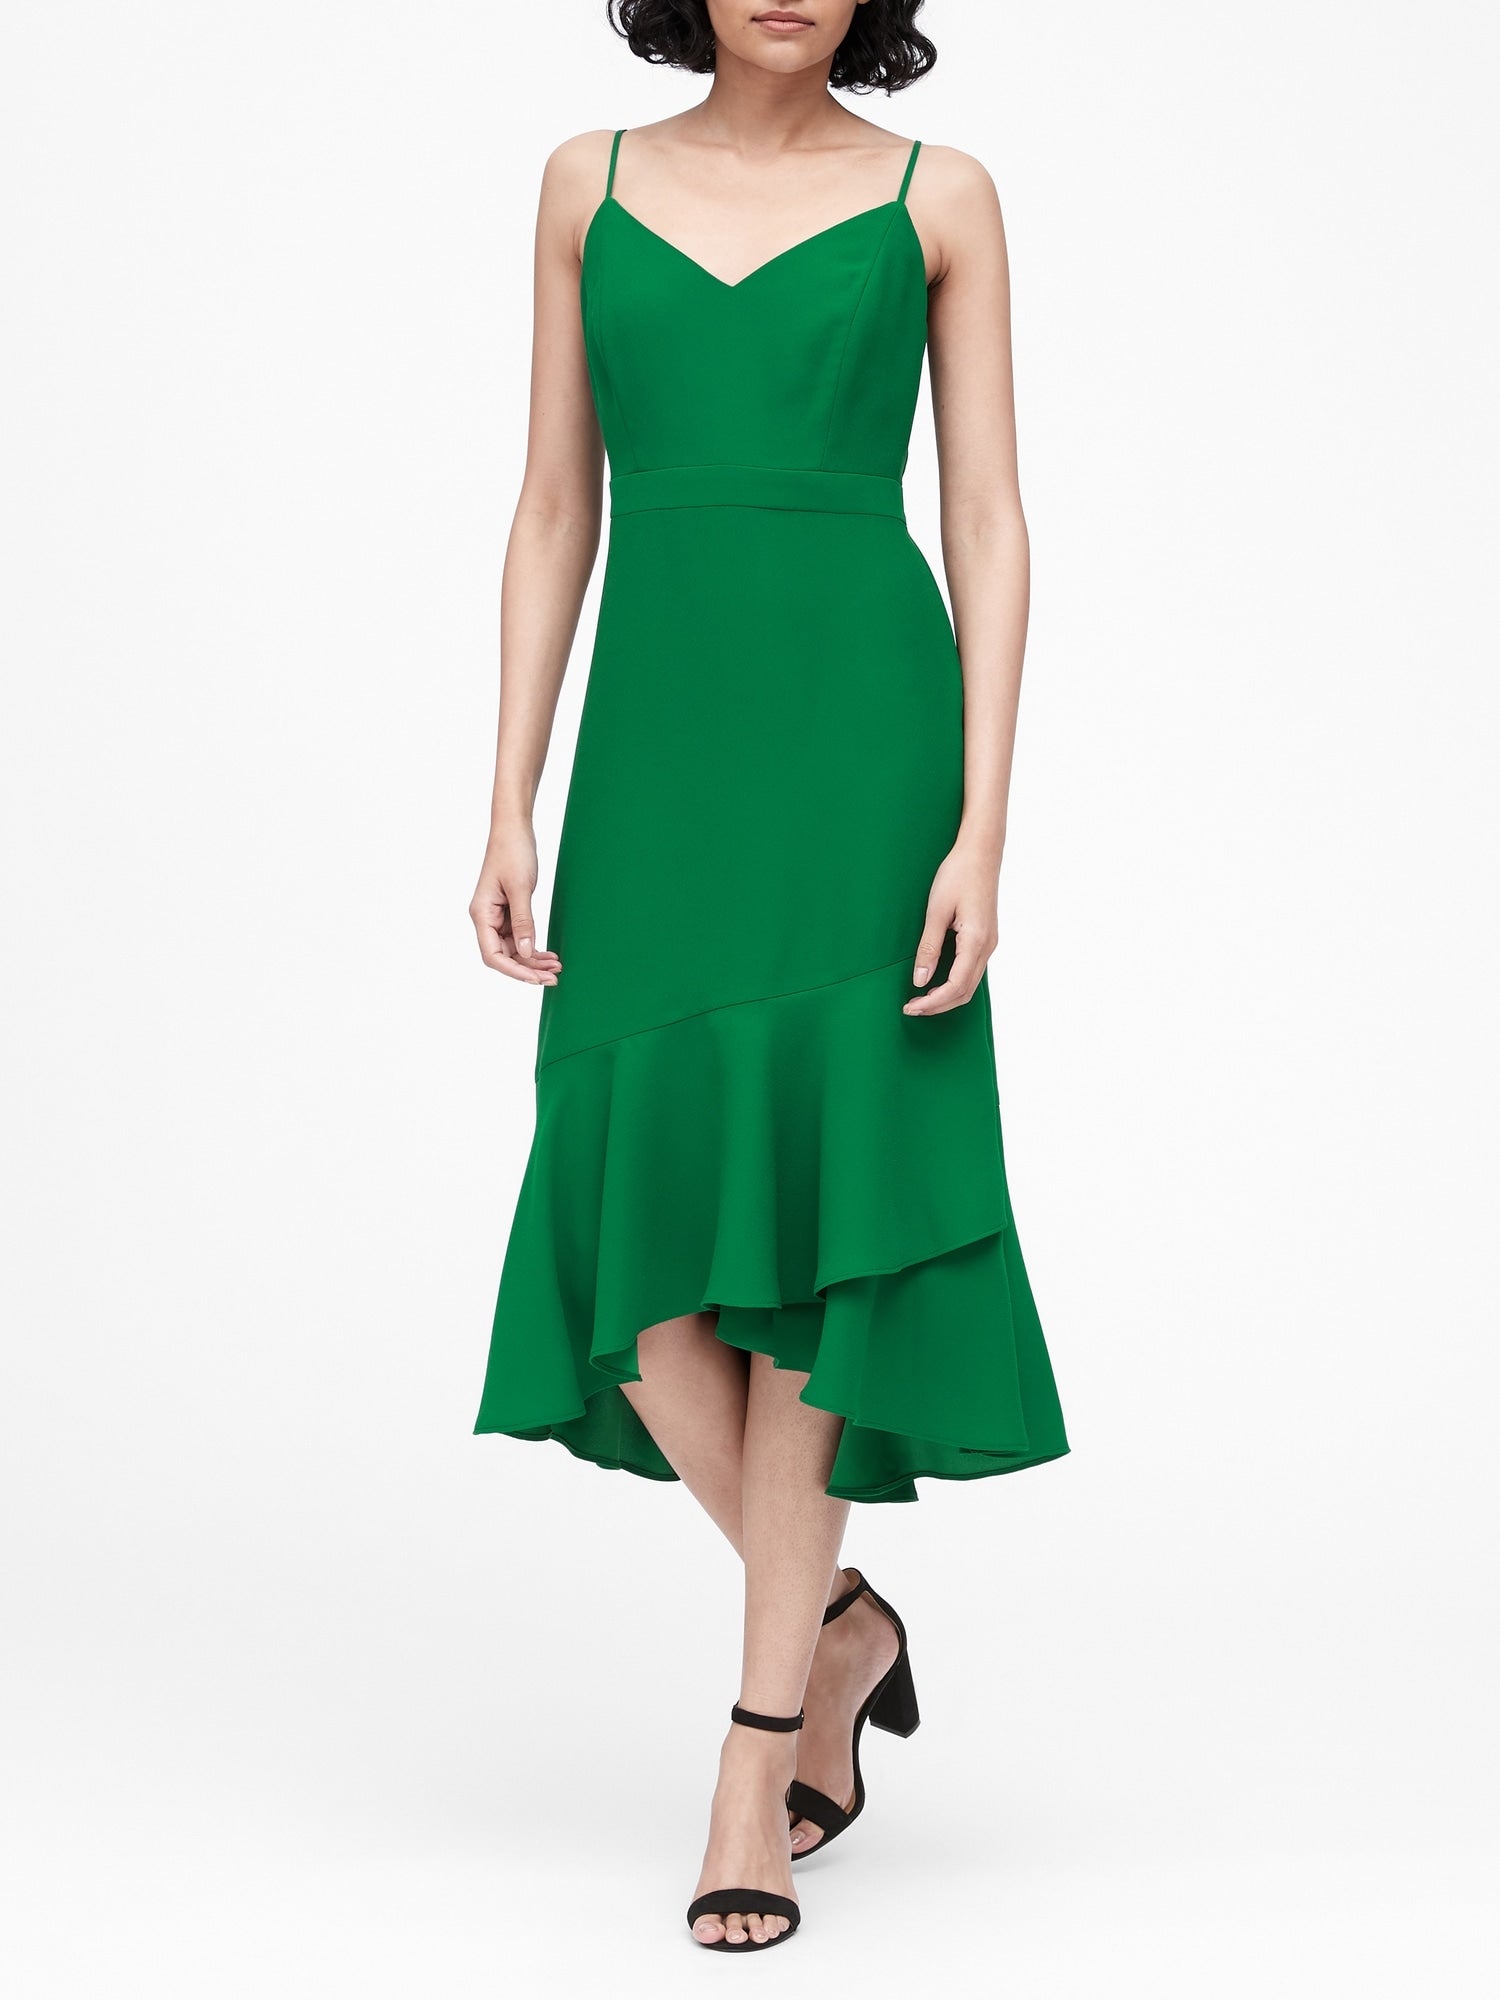 Kelly Green Sheath Dress Online Sales ...